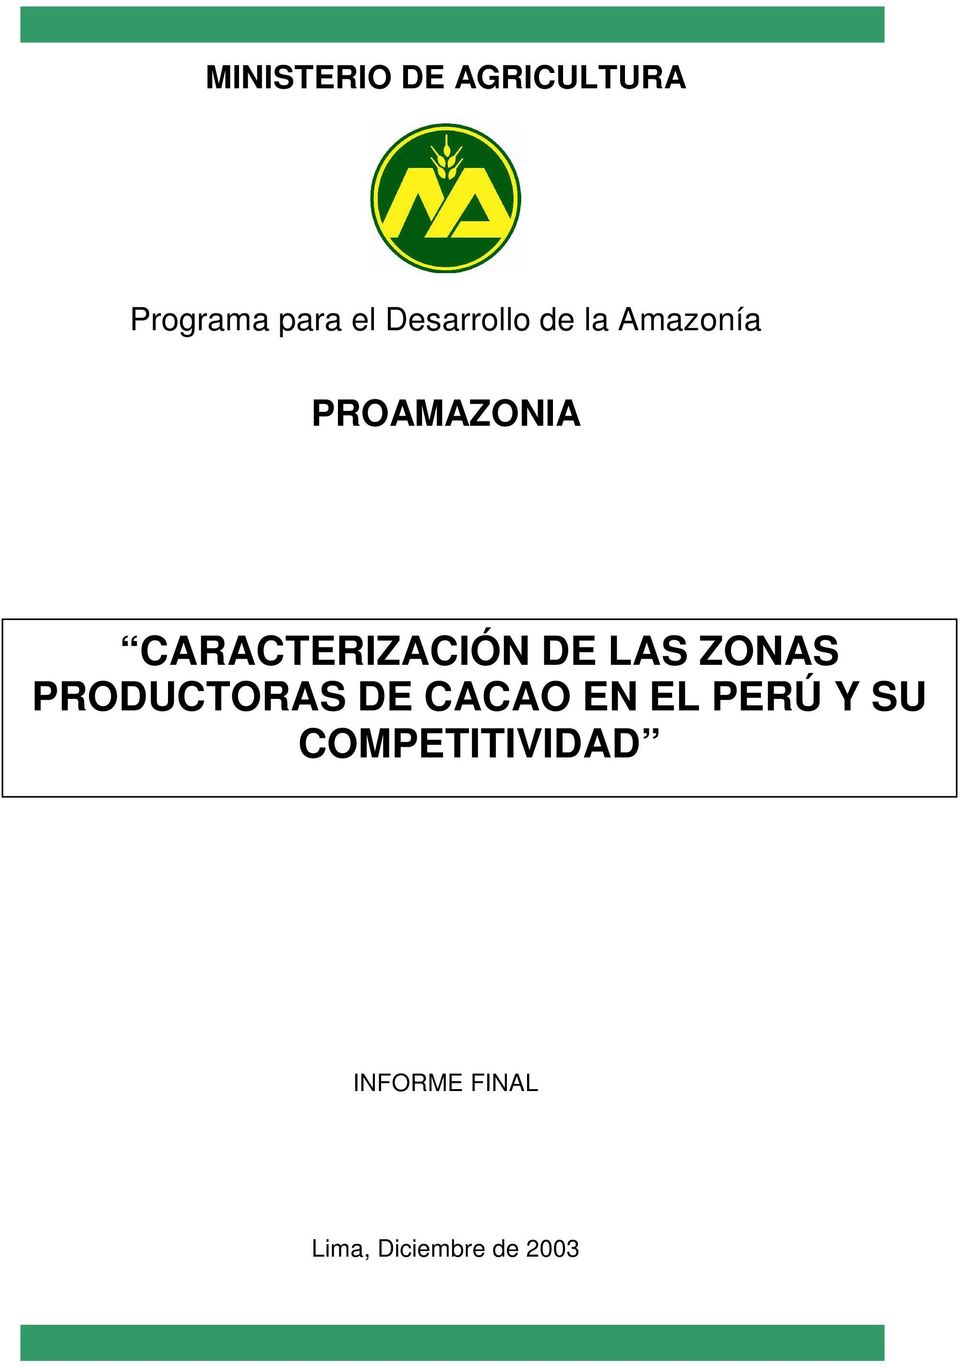 CARACTERIZACIÓN DE LAS ZONAS PRODUCTORAS DE CACAO